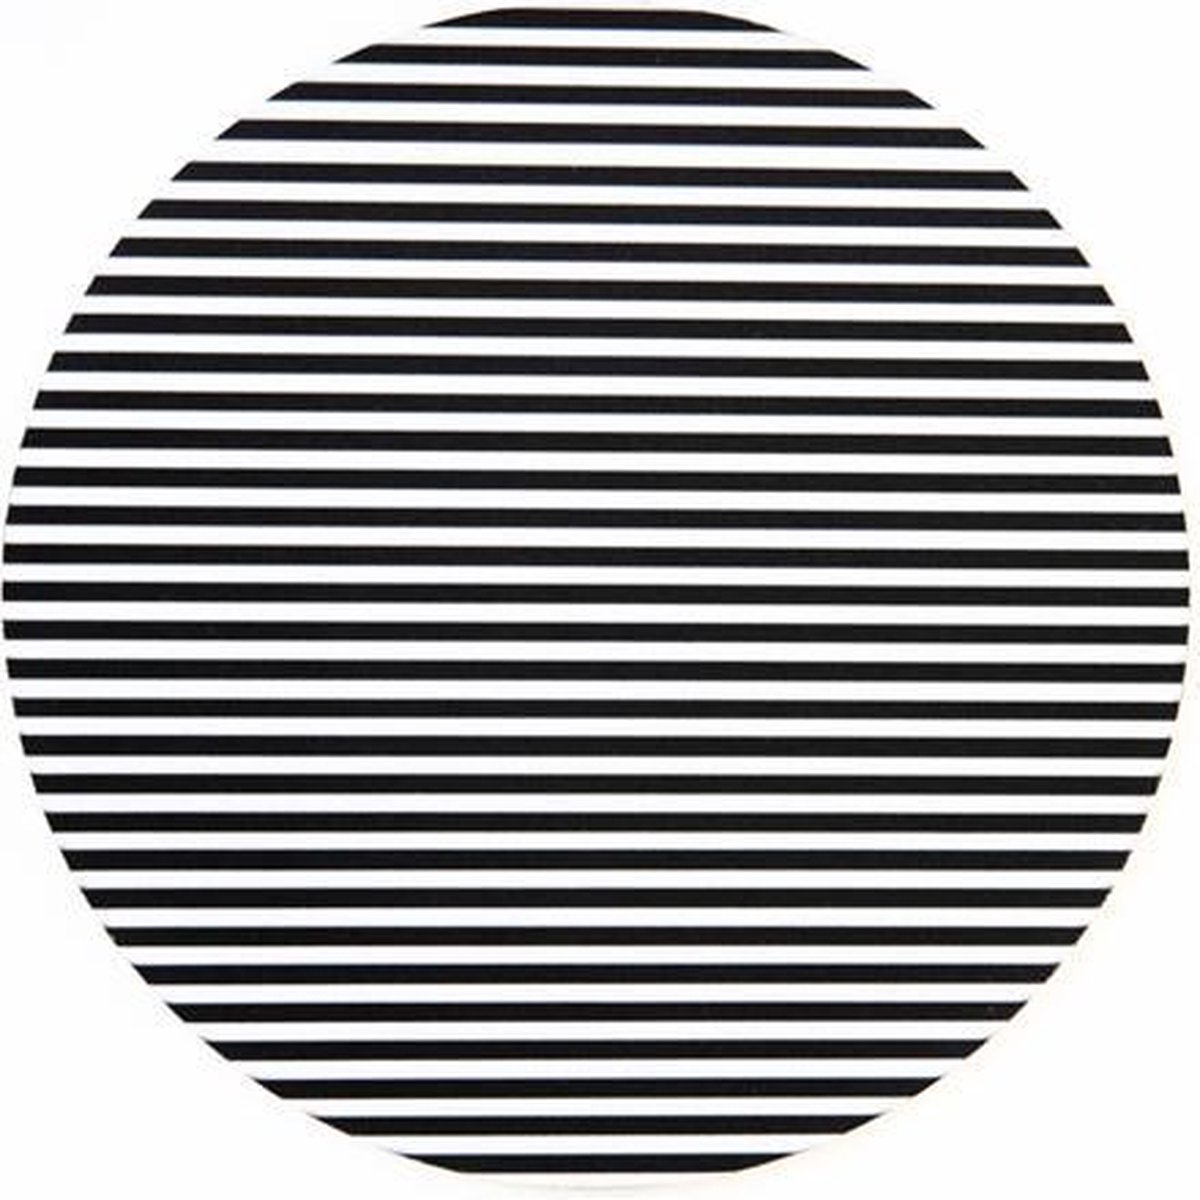 Computer - muismat smalle strepen zwart wit - rond - rubber - buigbaar - anti-slip - mousepad